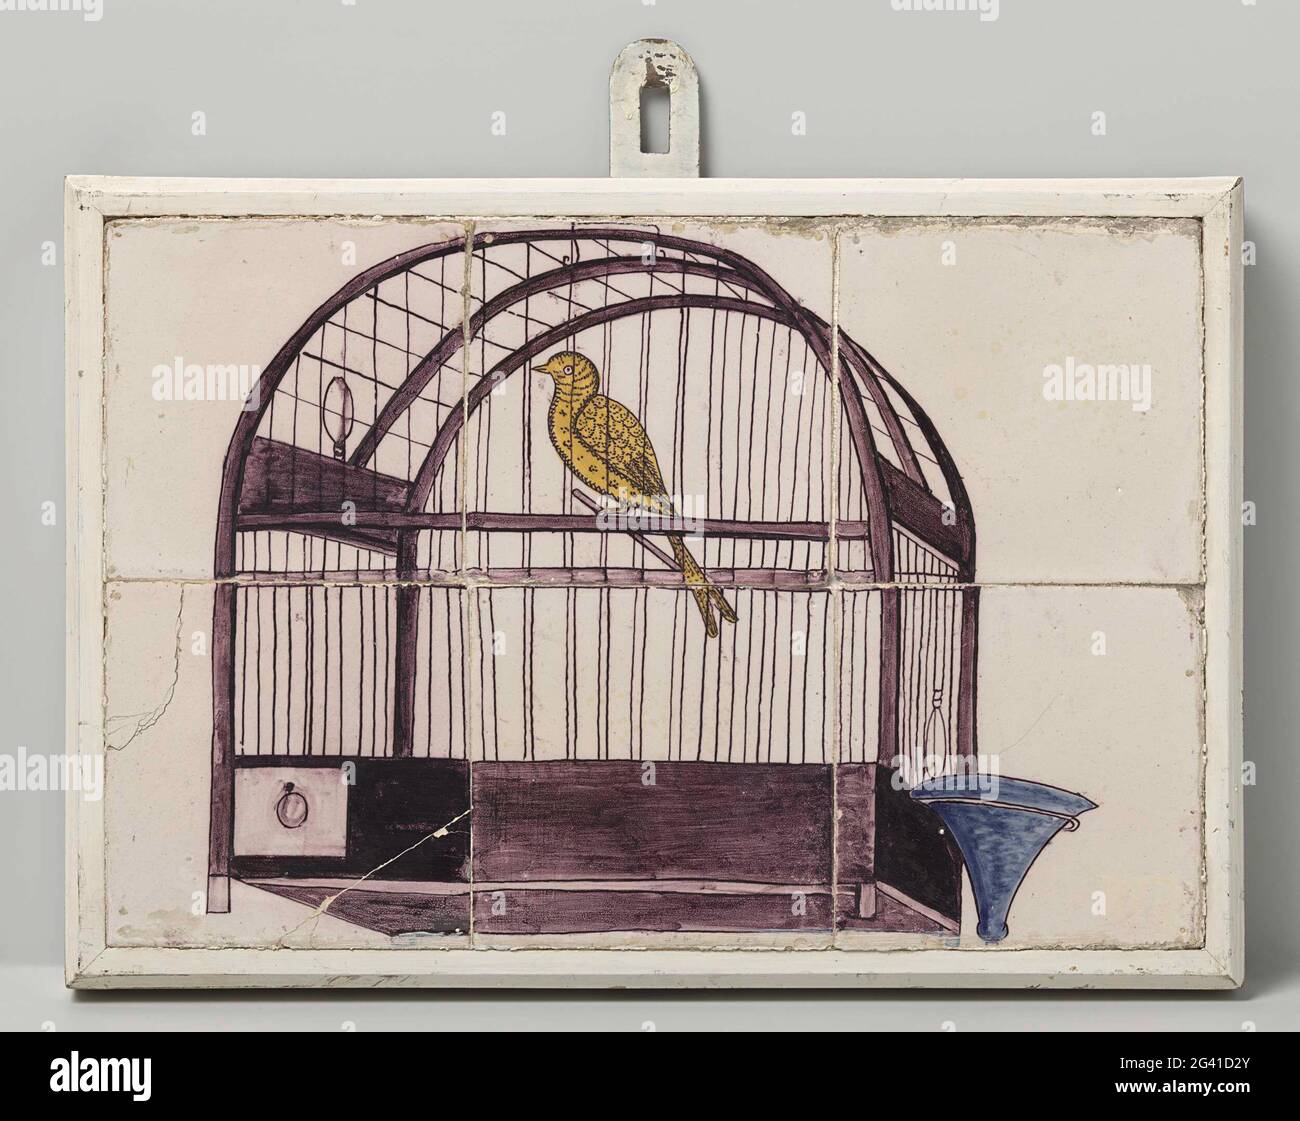 Tegola, dipinta con una rappresentazione di una gabbia di uccelli. Piastrella di sei tegole (2x3), dipinta in viola, blu e giallo con una rappresentazione di una gabbia di uccelli con abbeveratoio. Foto Stock